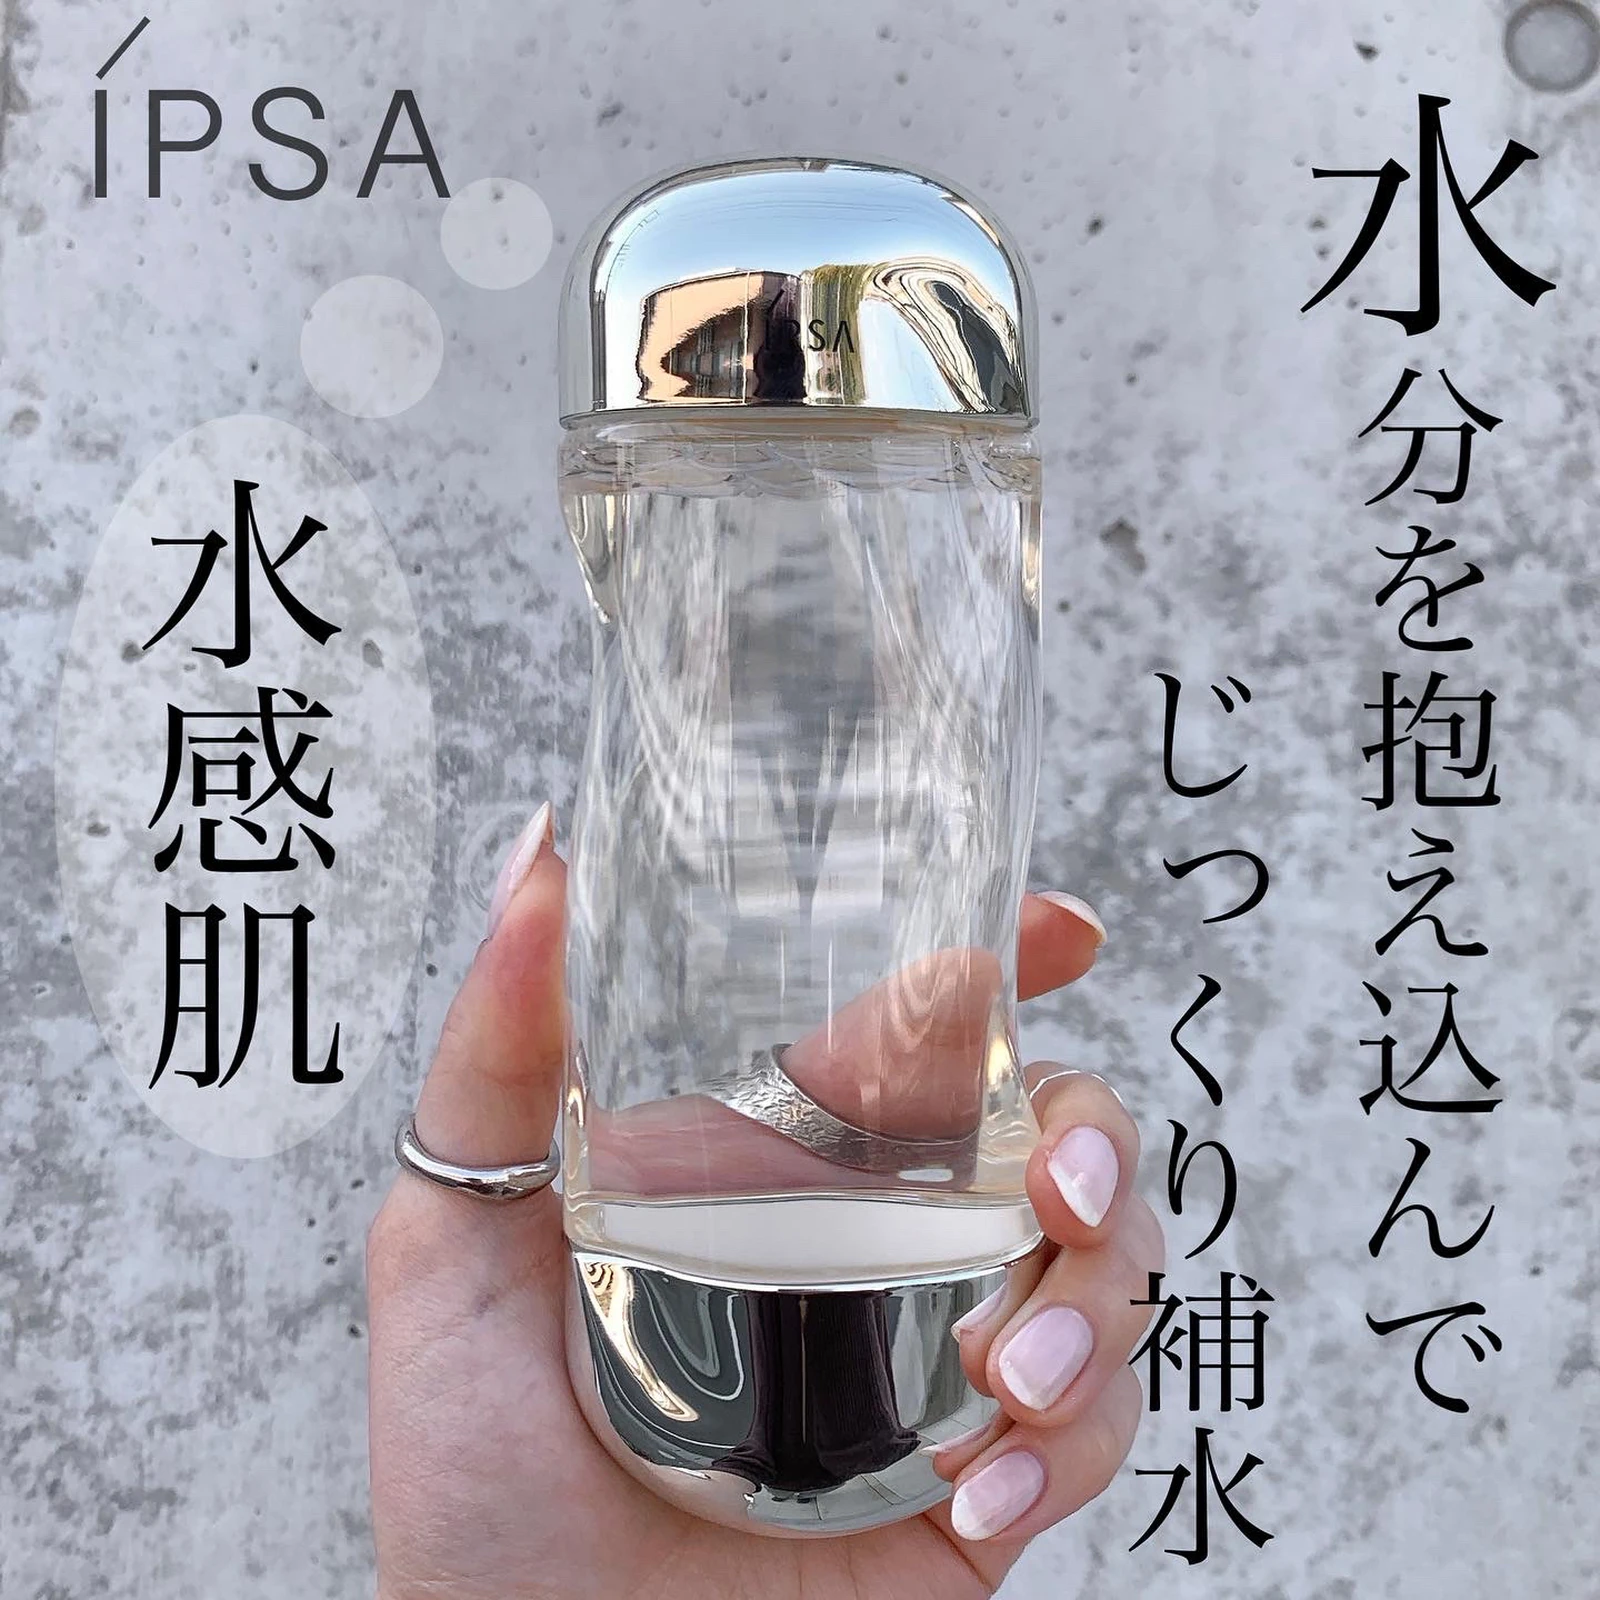 ザ・タイム IPSA - IPSA イプサ ザ・タイムRアクア 化粧水 200ml 新品2